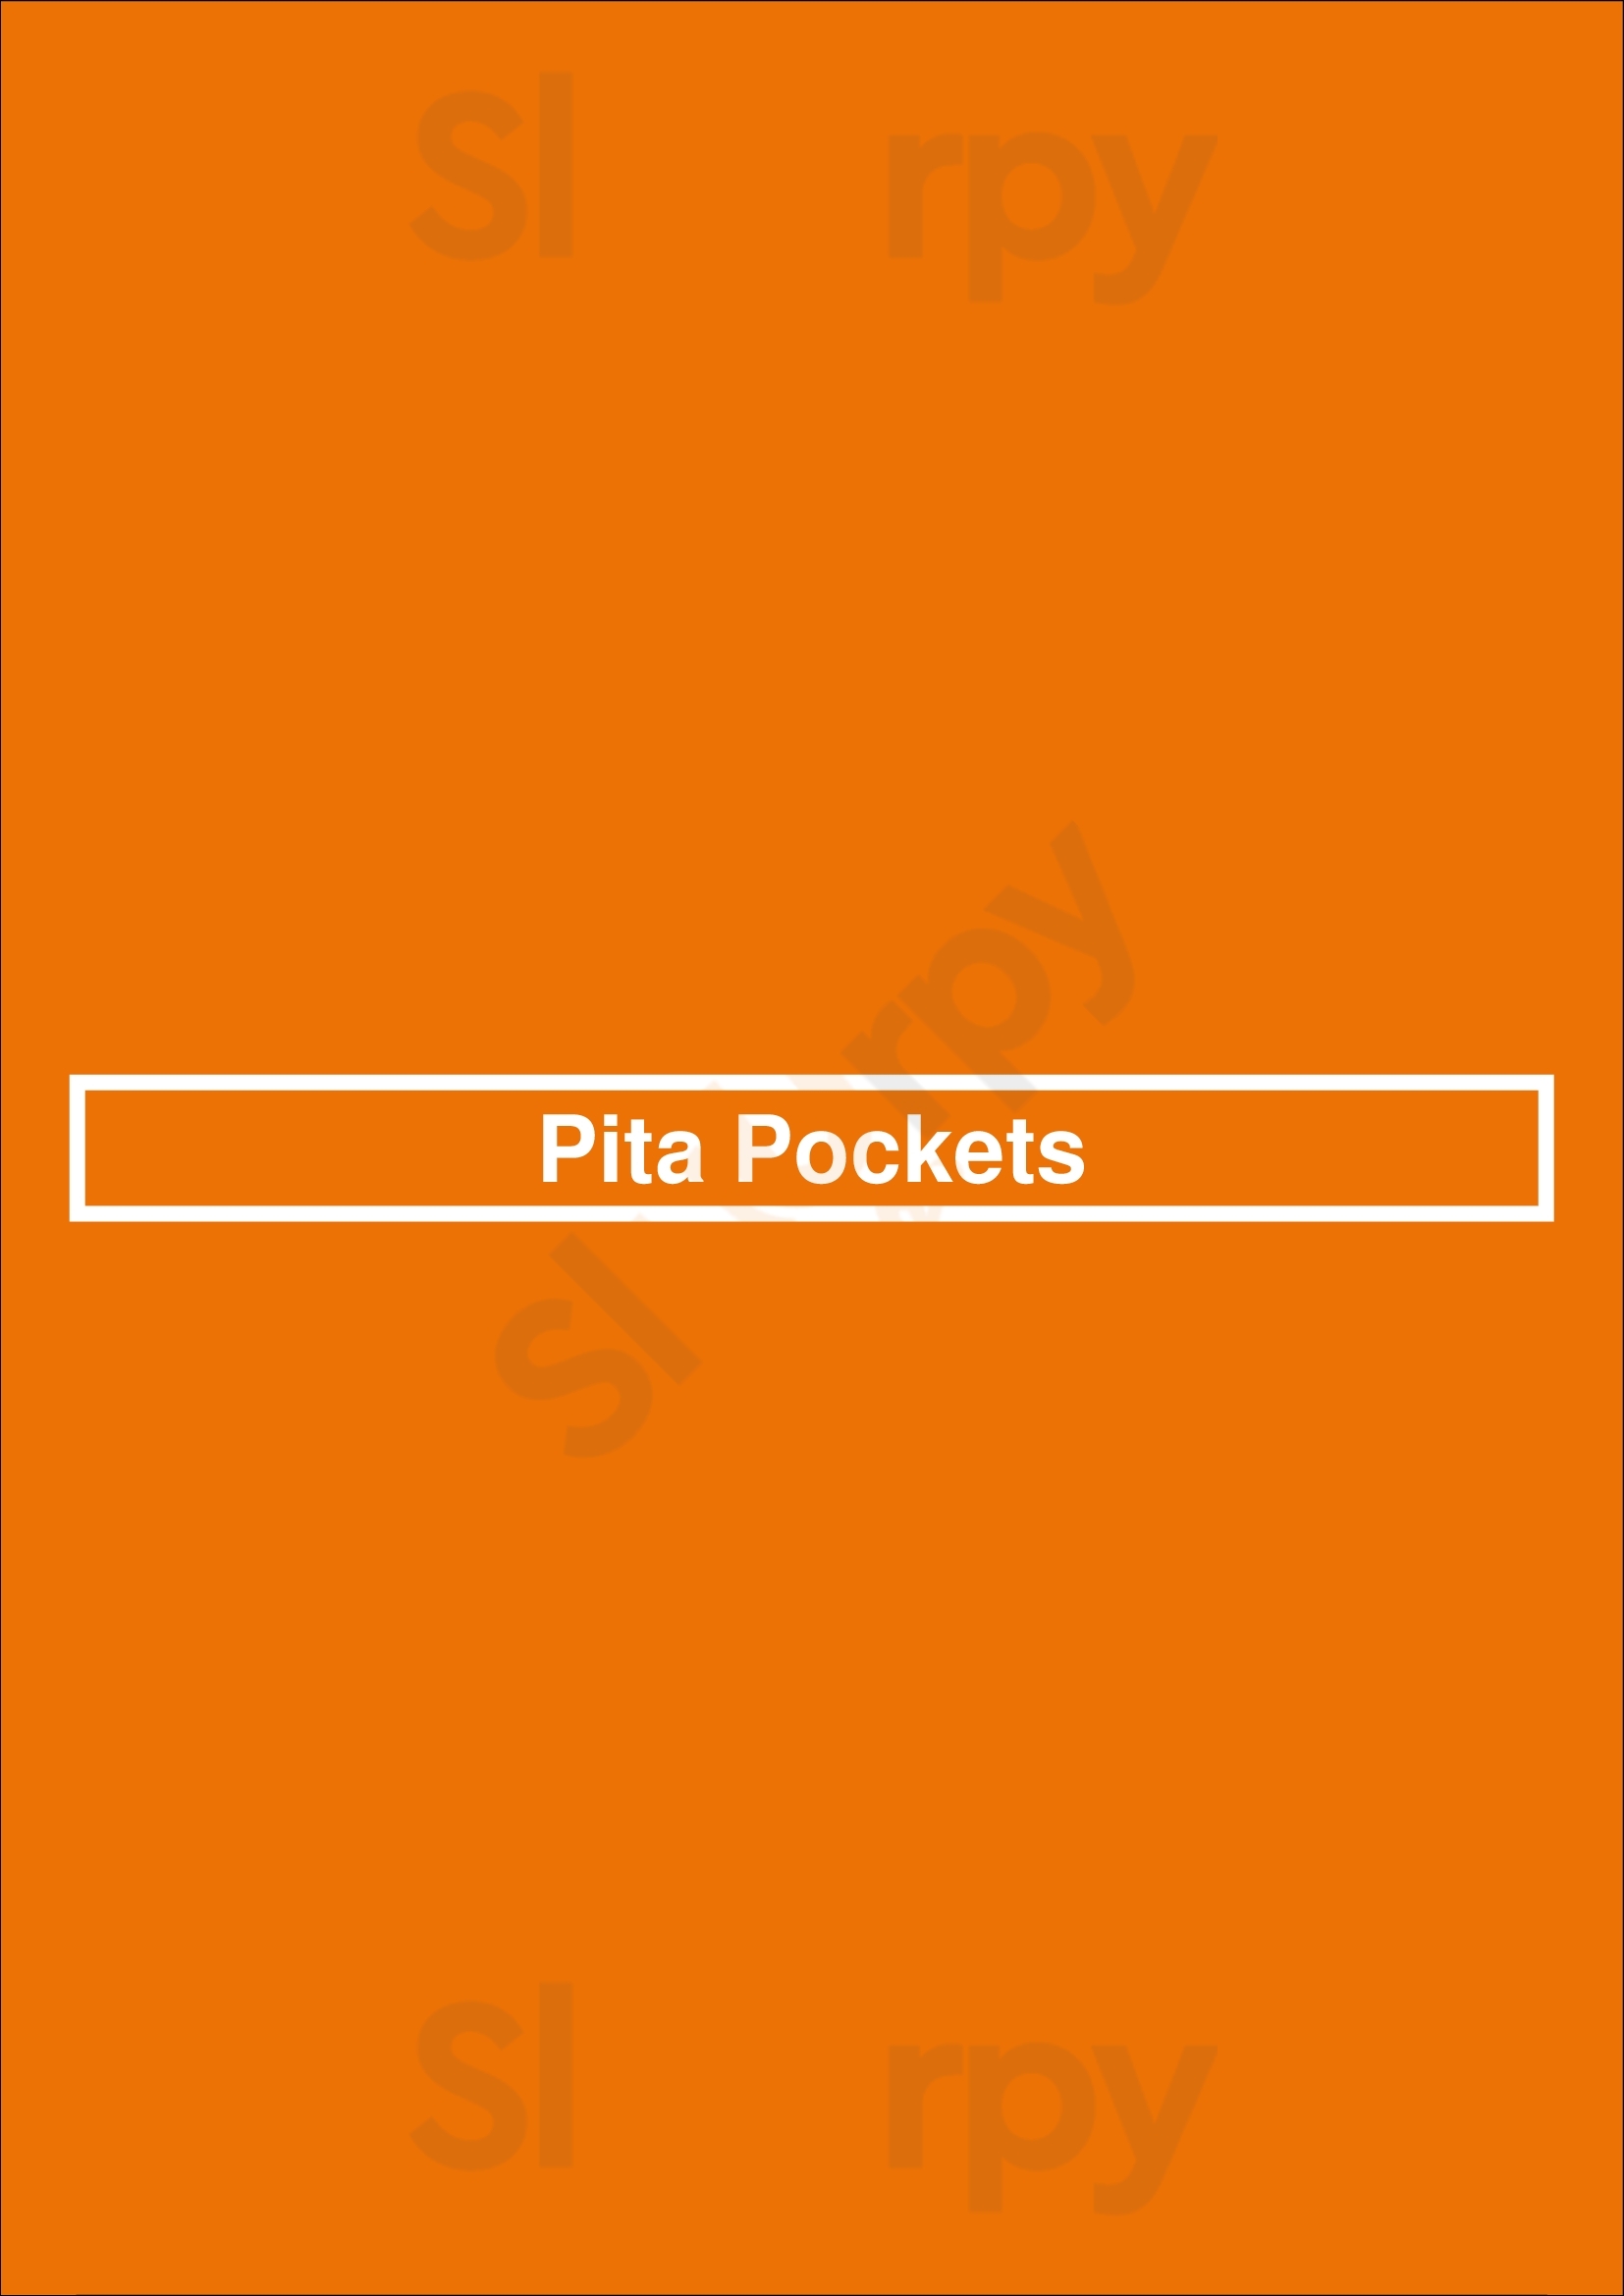 Pita Pockets Los Angeles Menu - 1